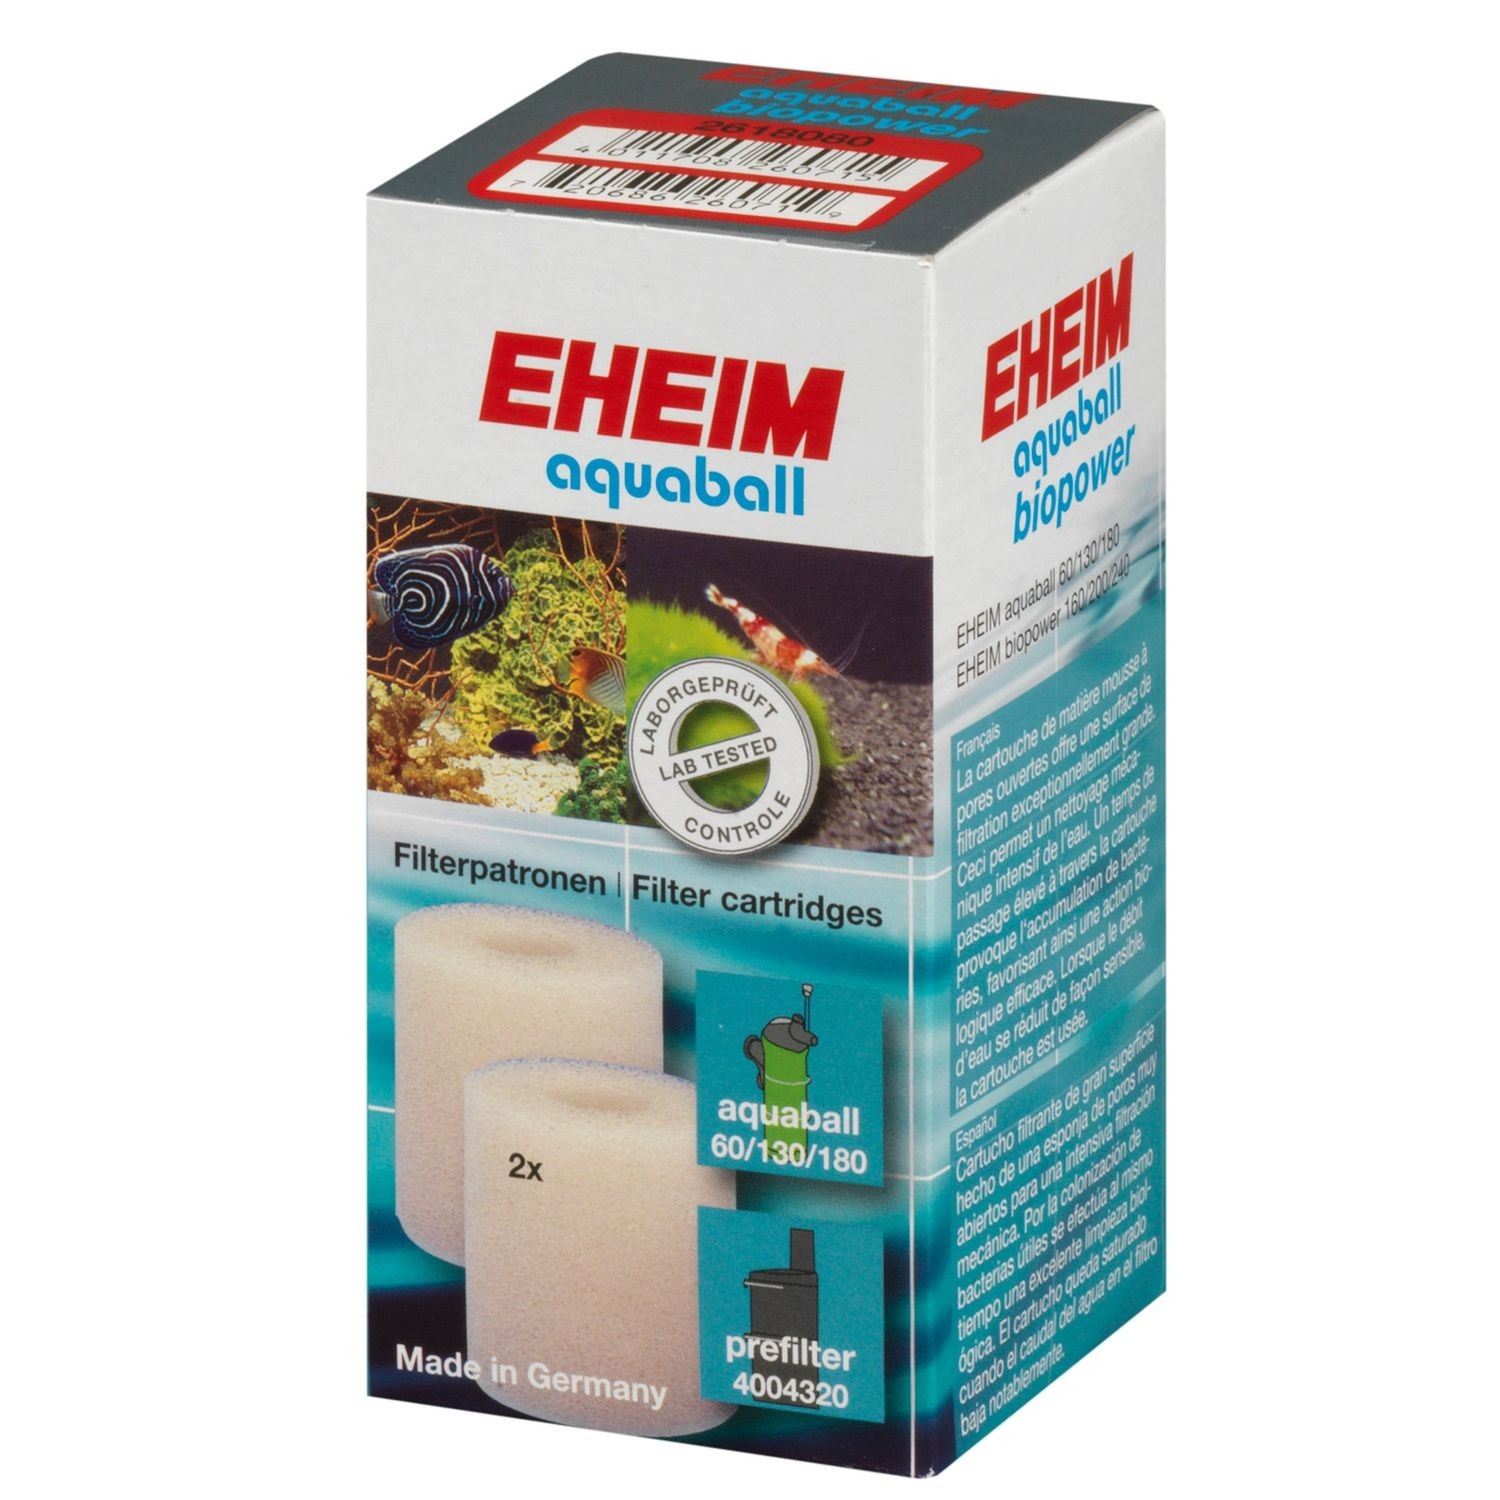 Cartucho de filtração para filtro EHEIM Aquaball 60 / 130 / 180 et Biopower 160 / 200 / 240